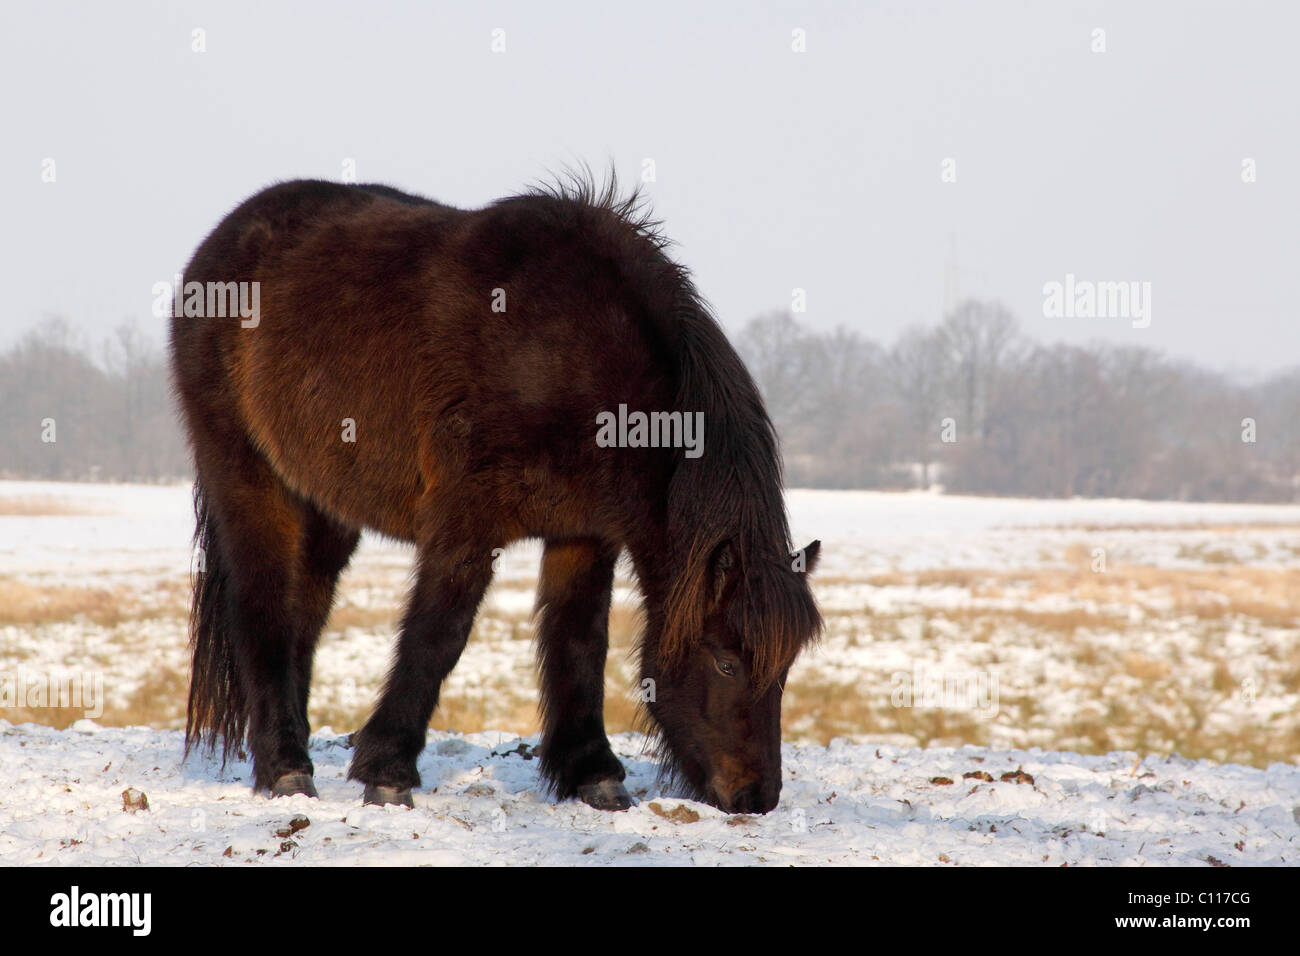 Islandese di cavallo, pony islandese (Equus przewalskii f. caballus) in inverno nella neve Foto Stock